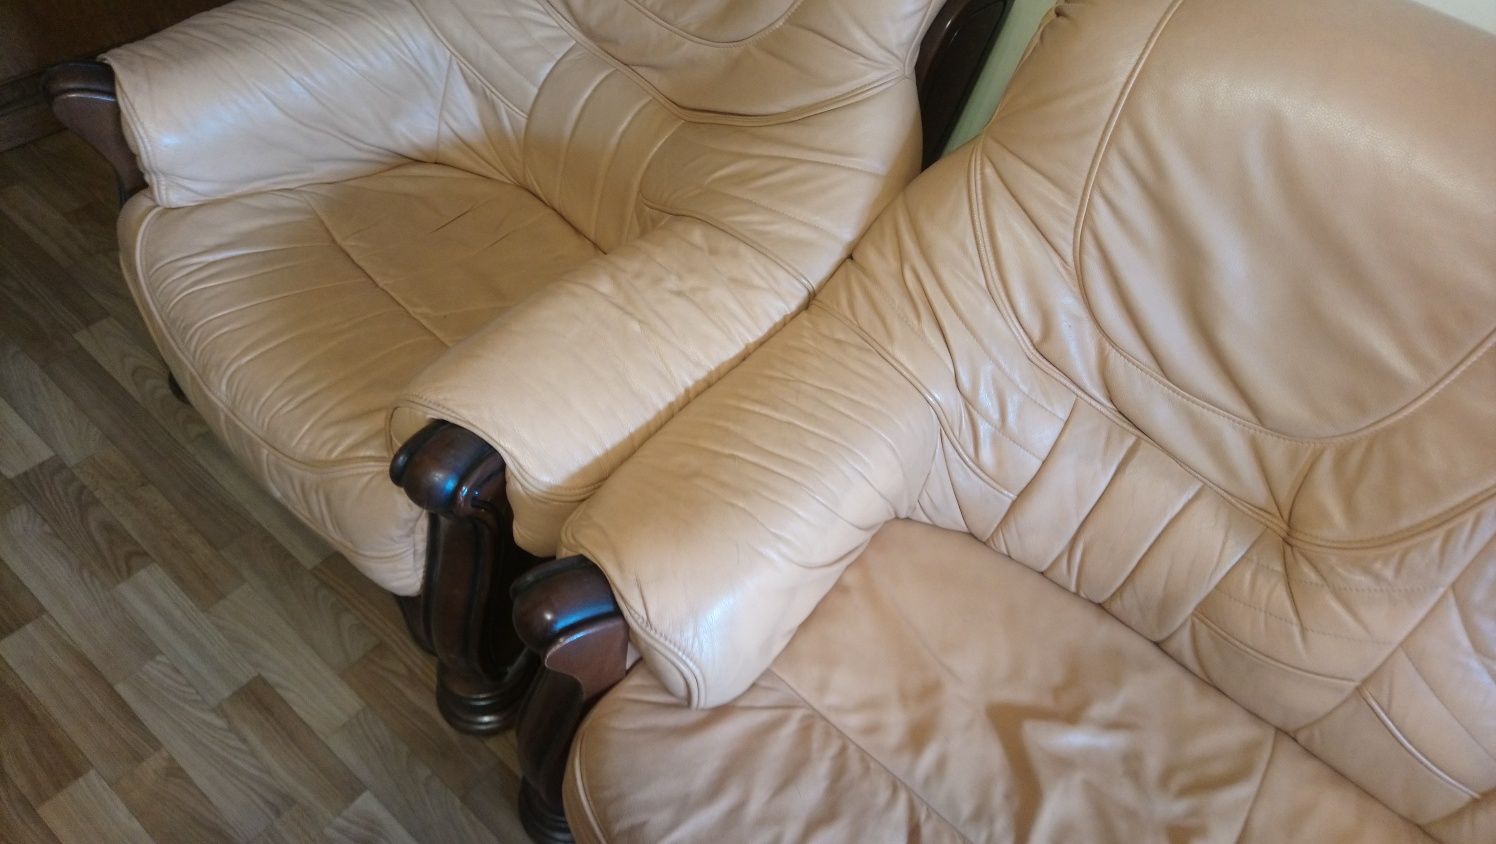 Мебель кожаная диван и два кресла. Румыния.